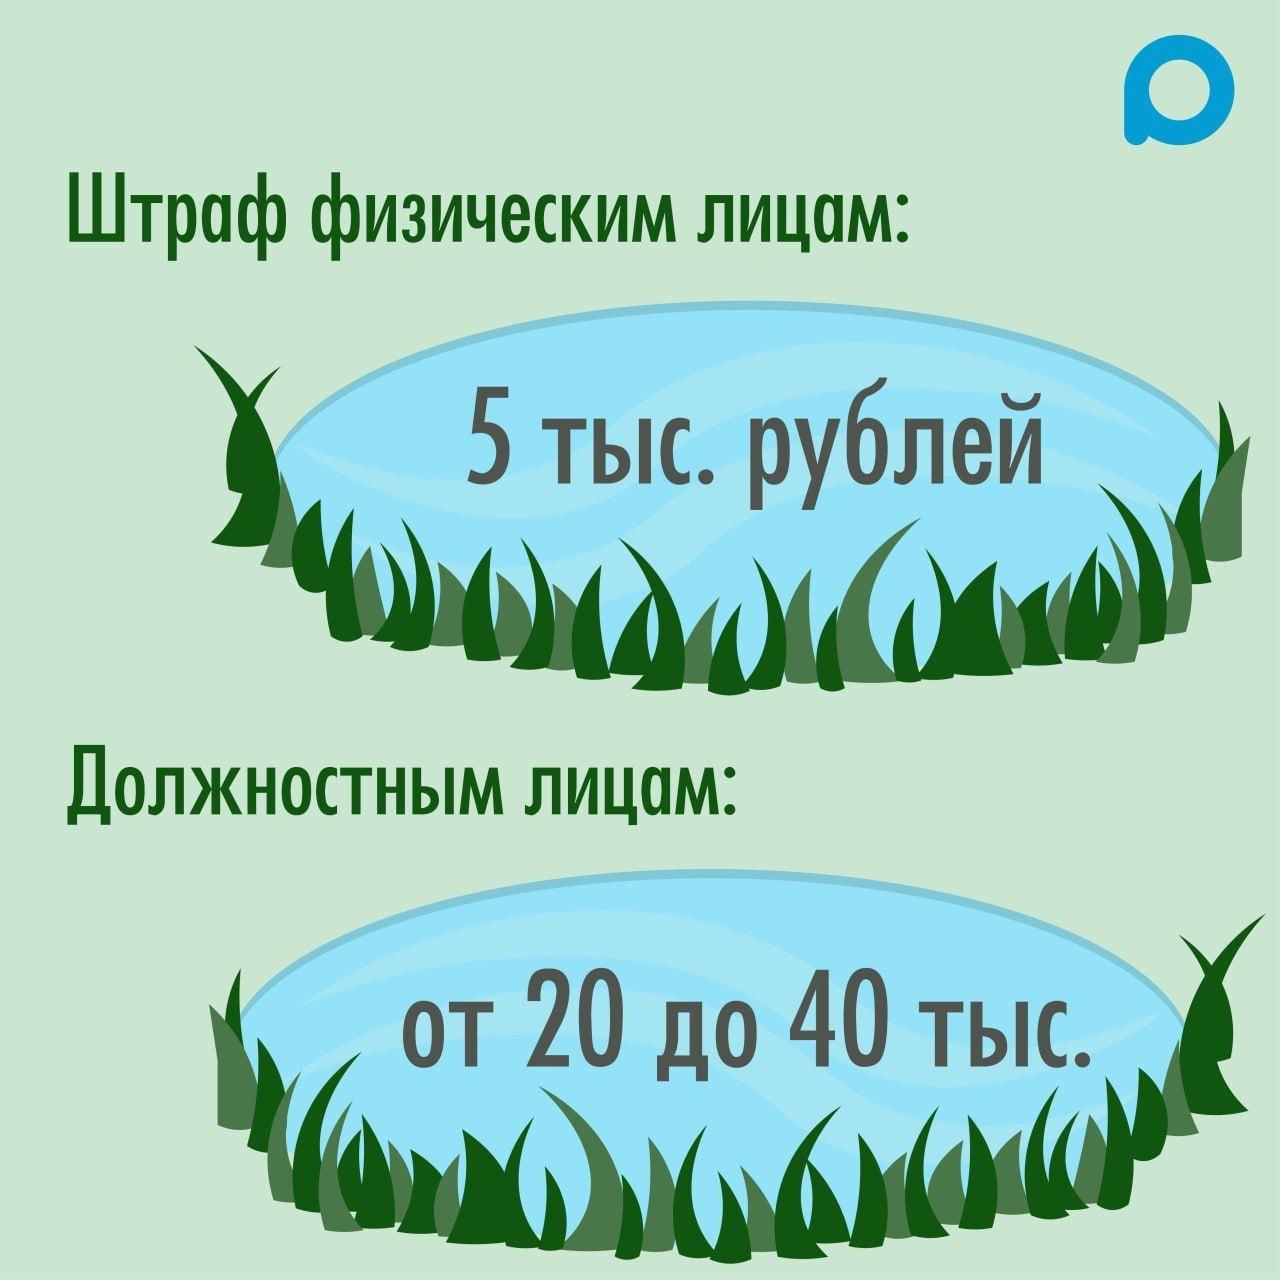 нарушение экологии для физлиц 5000 рублей, зеленоград-инфо.рф